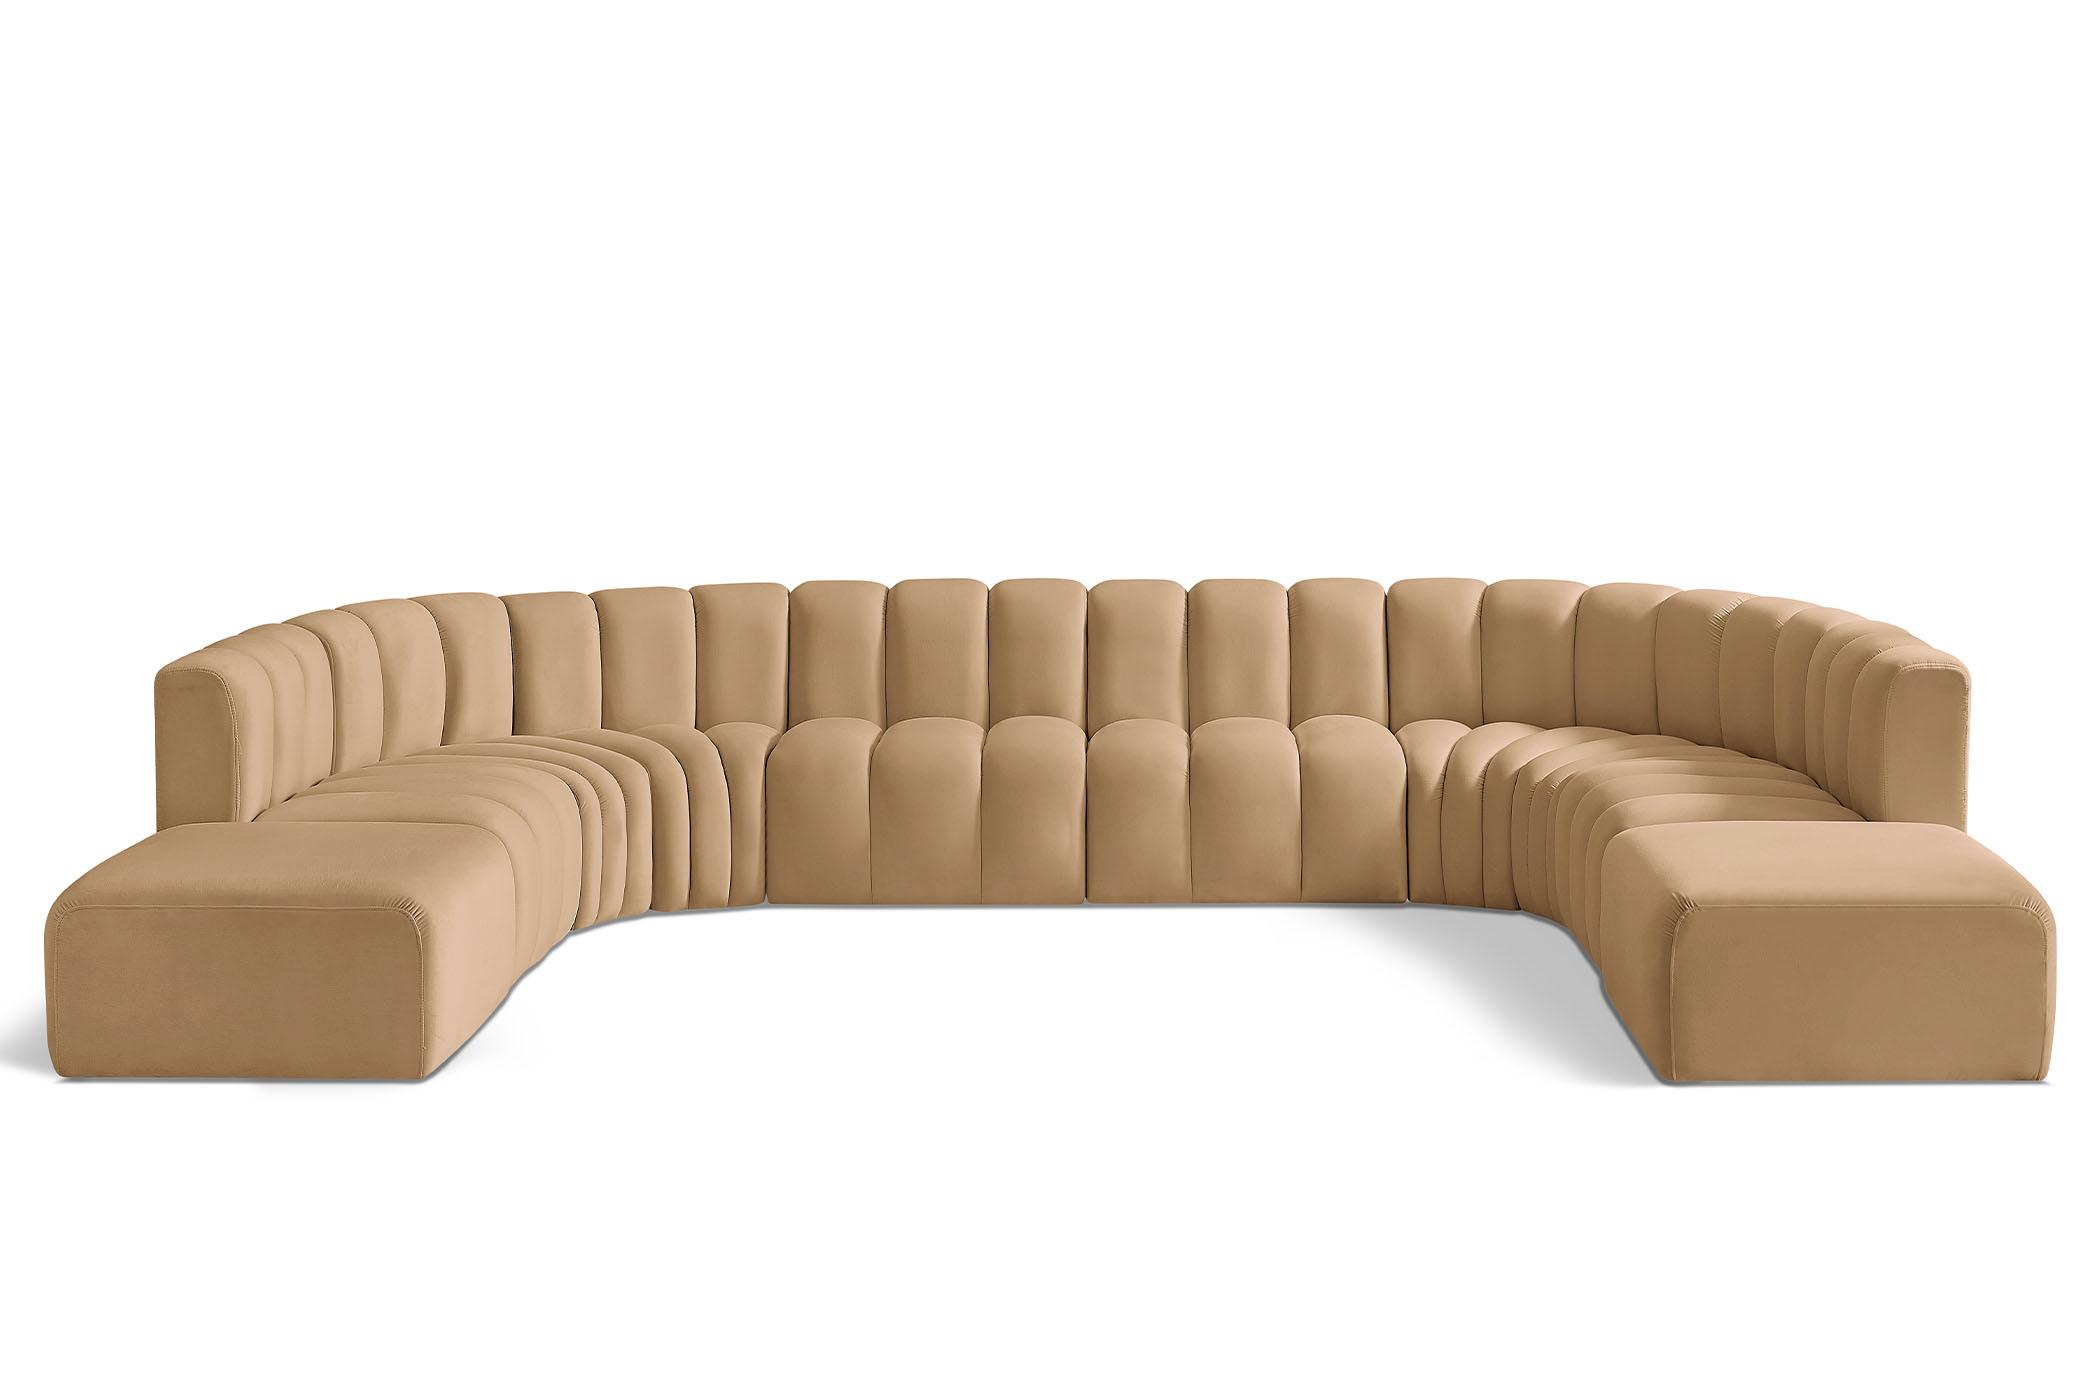 Contemporary, Modern Modular Sectional Sofa ARC 103Camel-S10A 103Camel-S10A in Camel Velvet